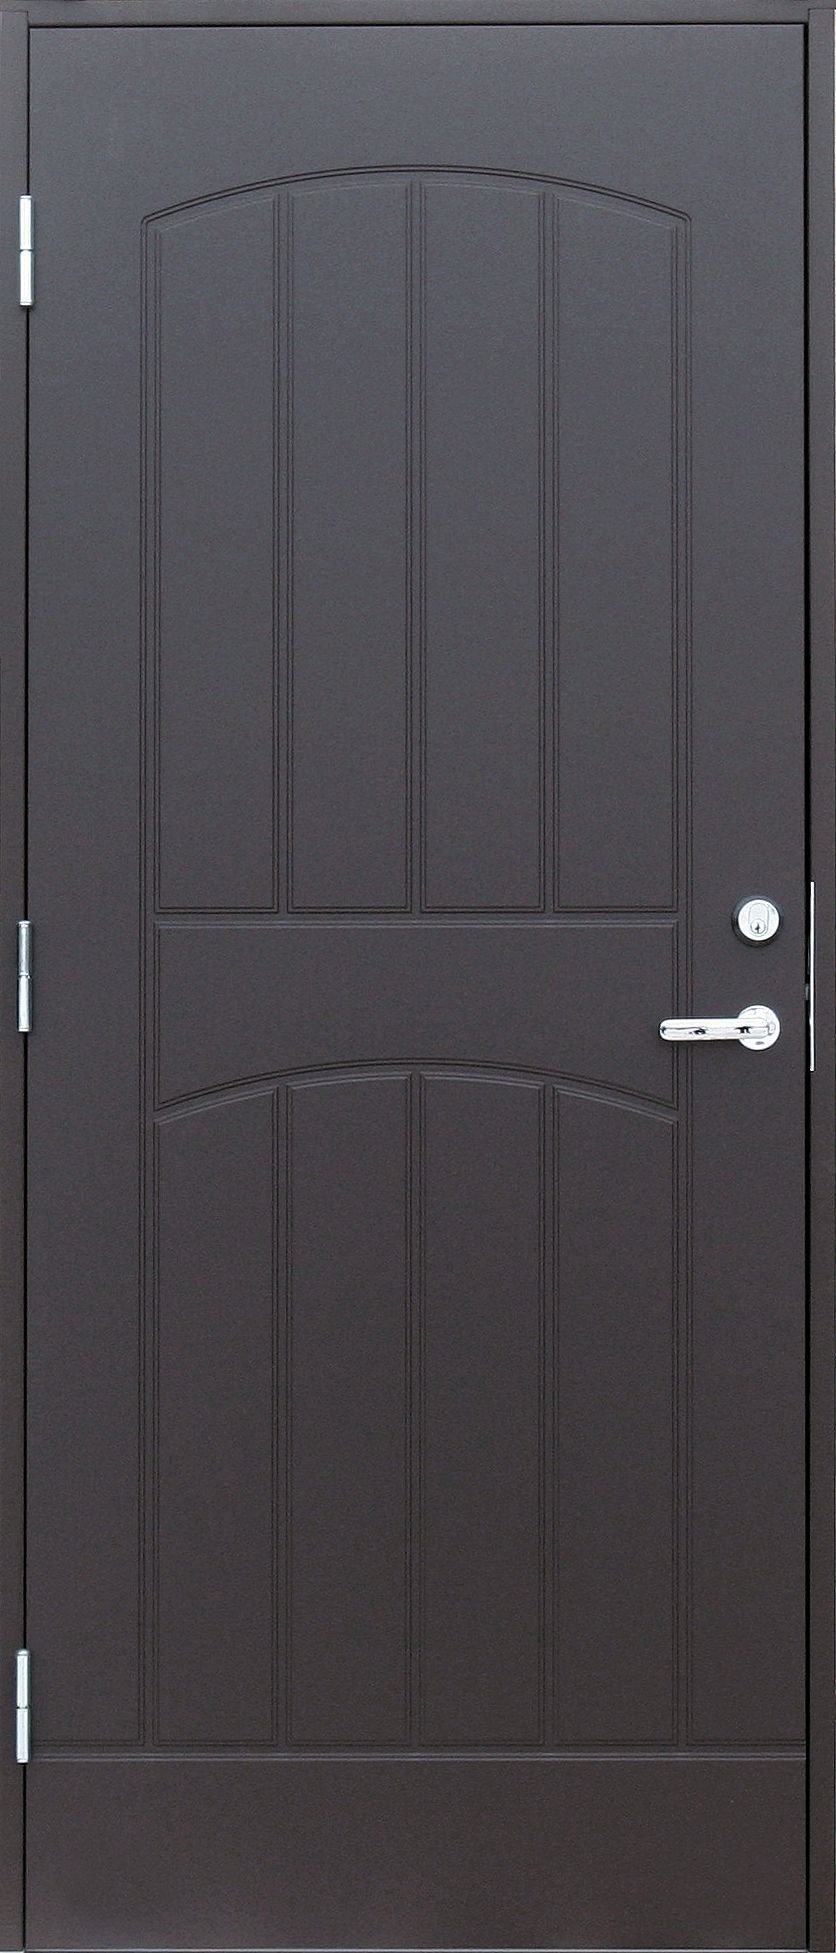 Lauko durys VILJANDI GRACIA, rudos sp., 990 x 2088 mm, kairė